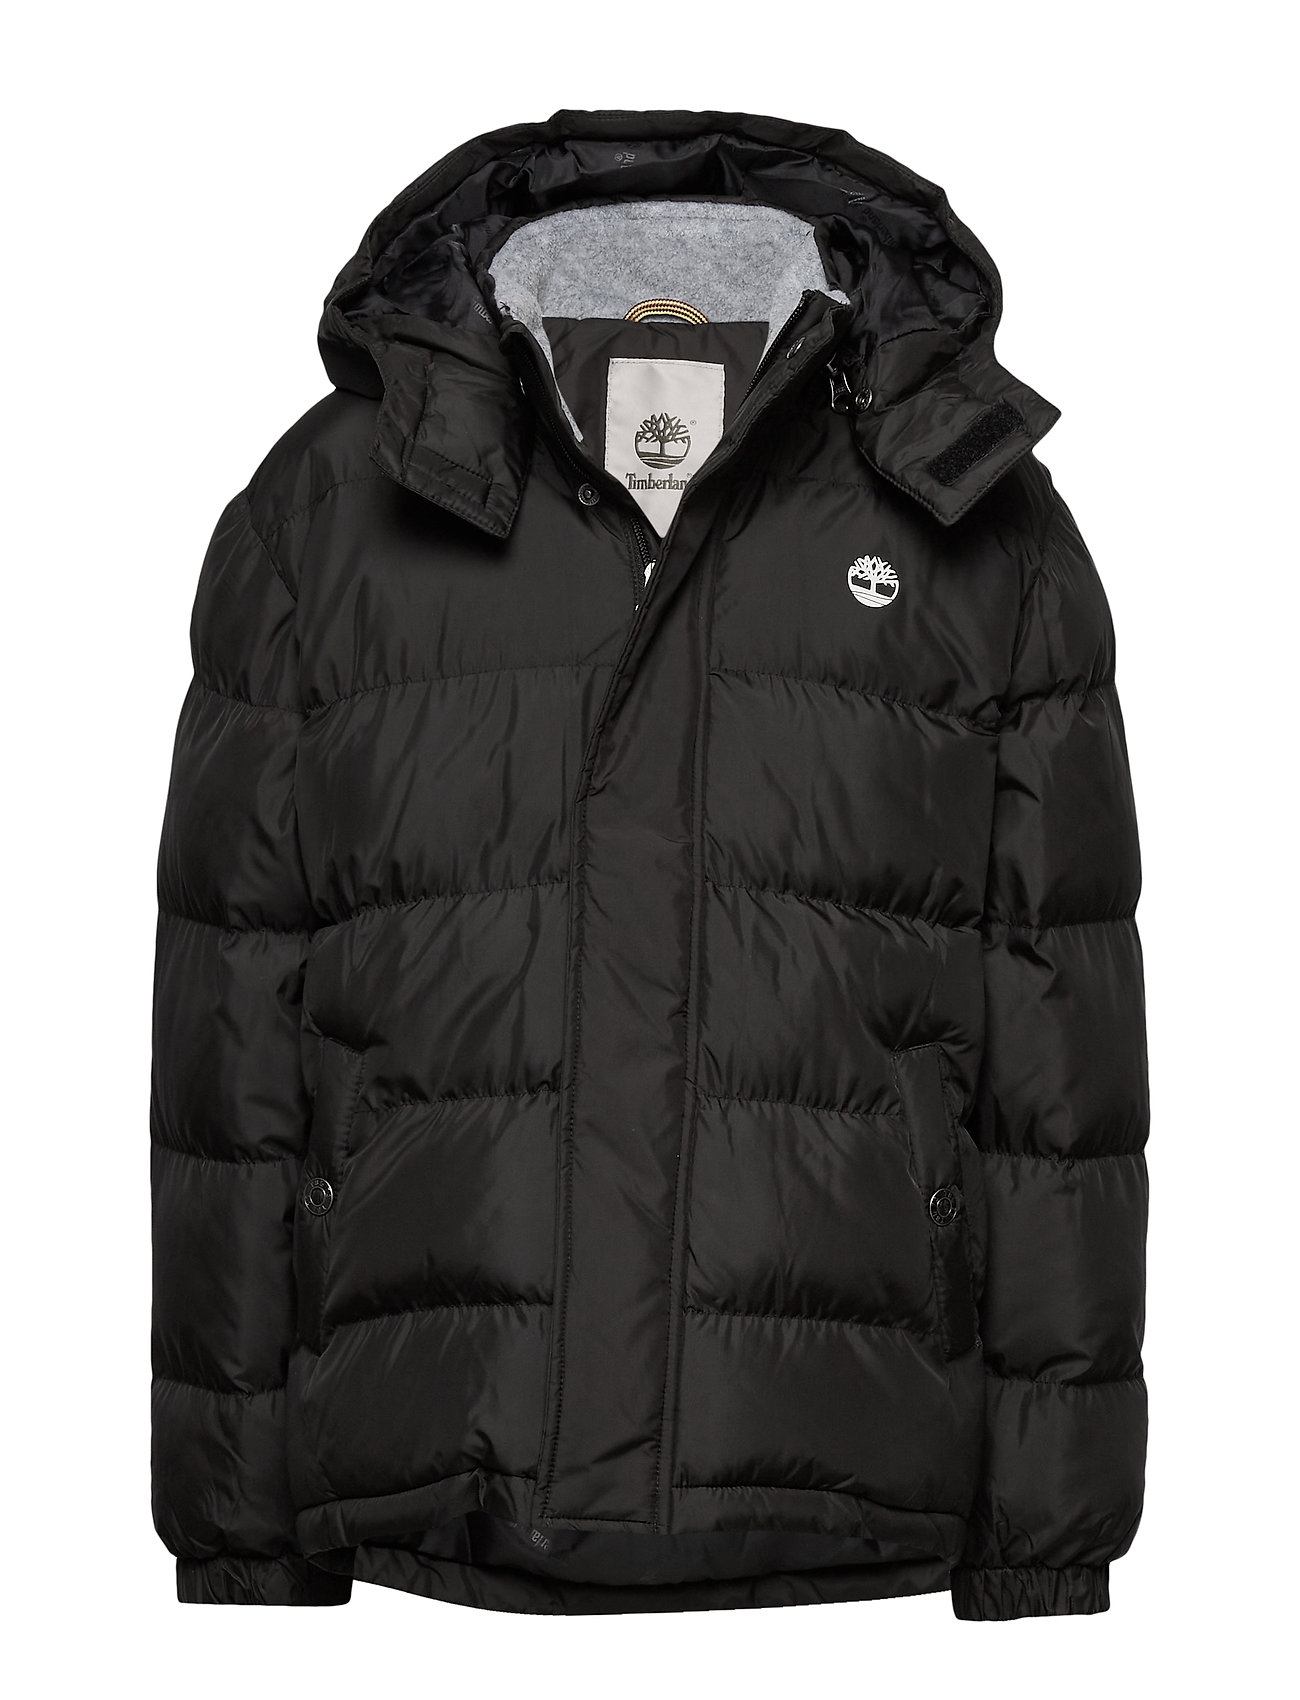 Timberland Puffer Jacket (Black), (59 